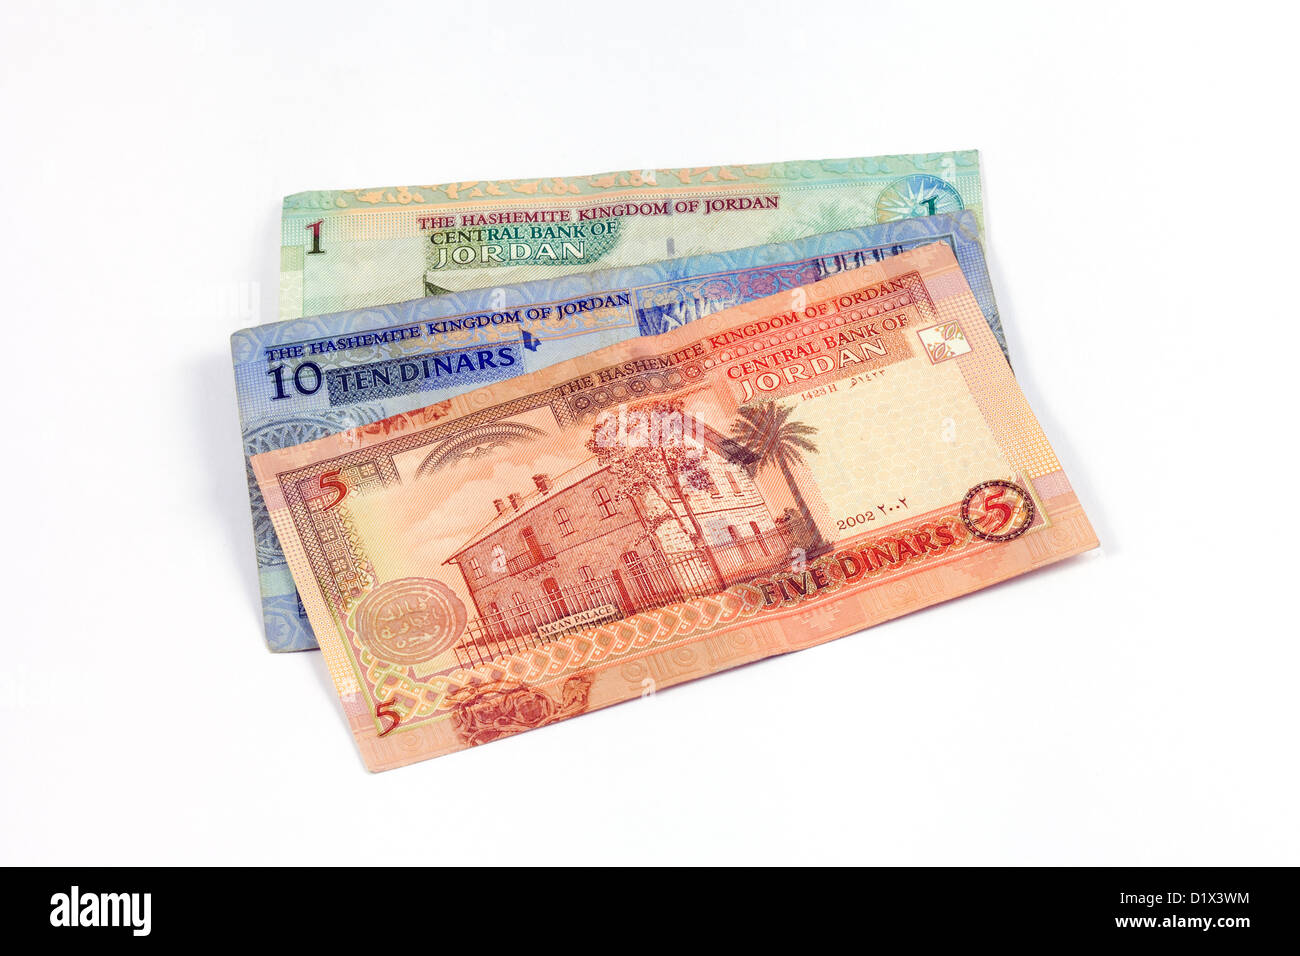 Jordan Dinars - close up of Jordanian notes cash travel money currency Stock Photo